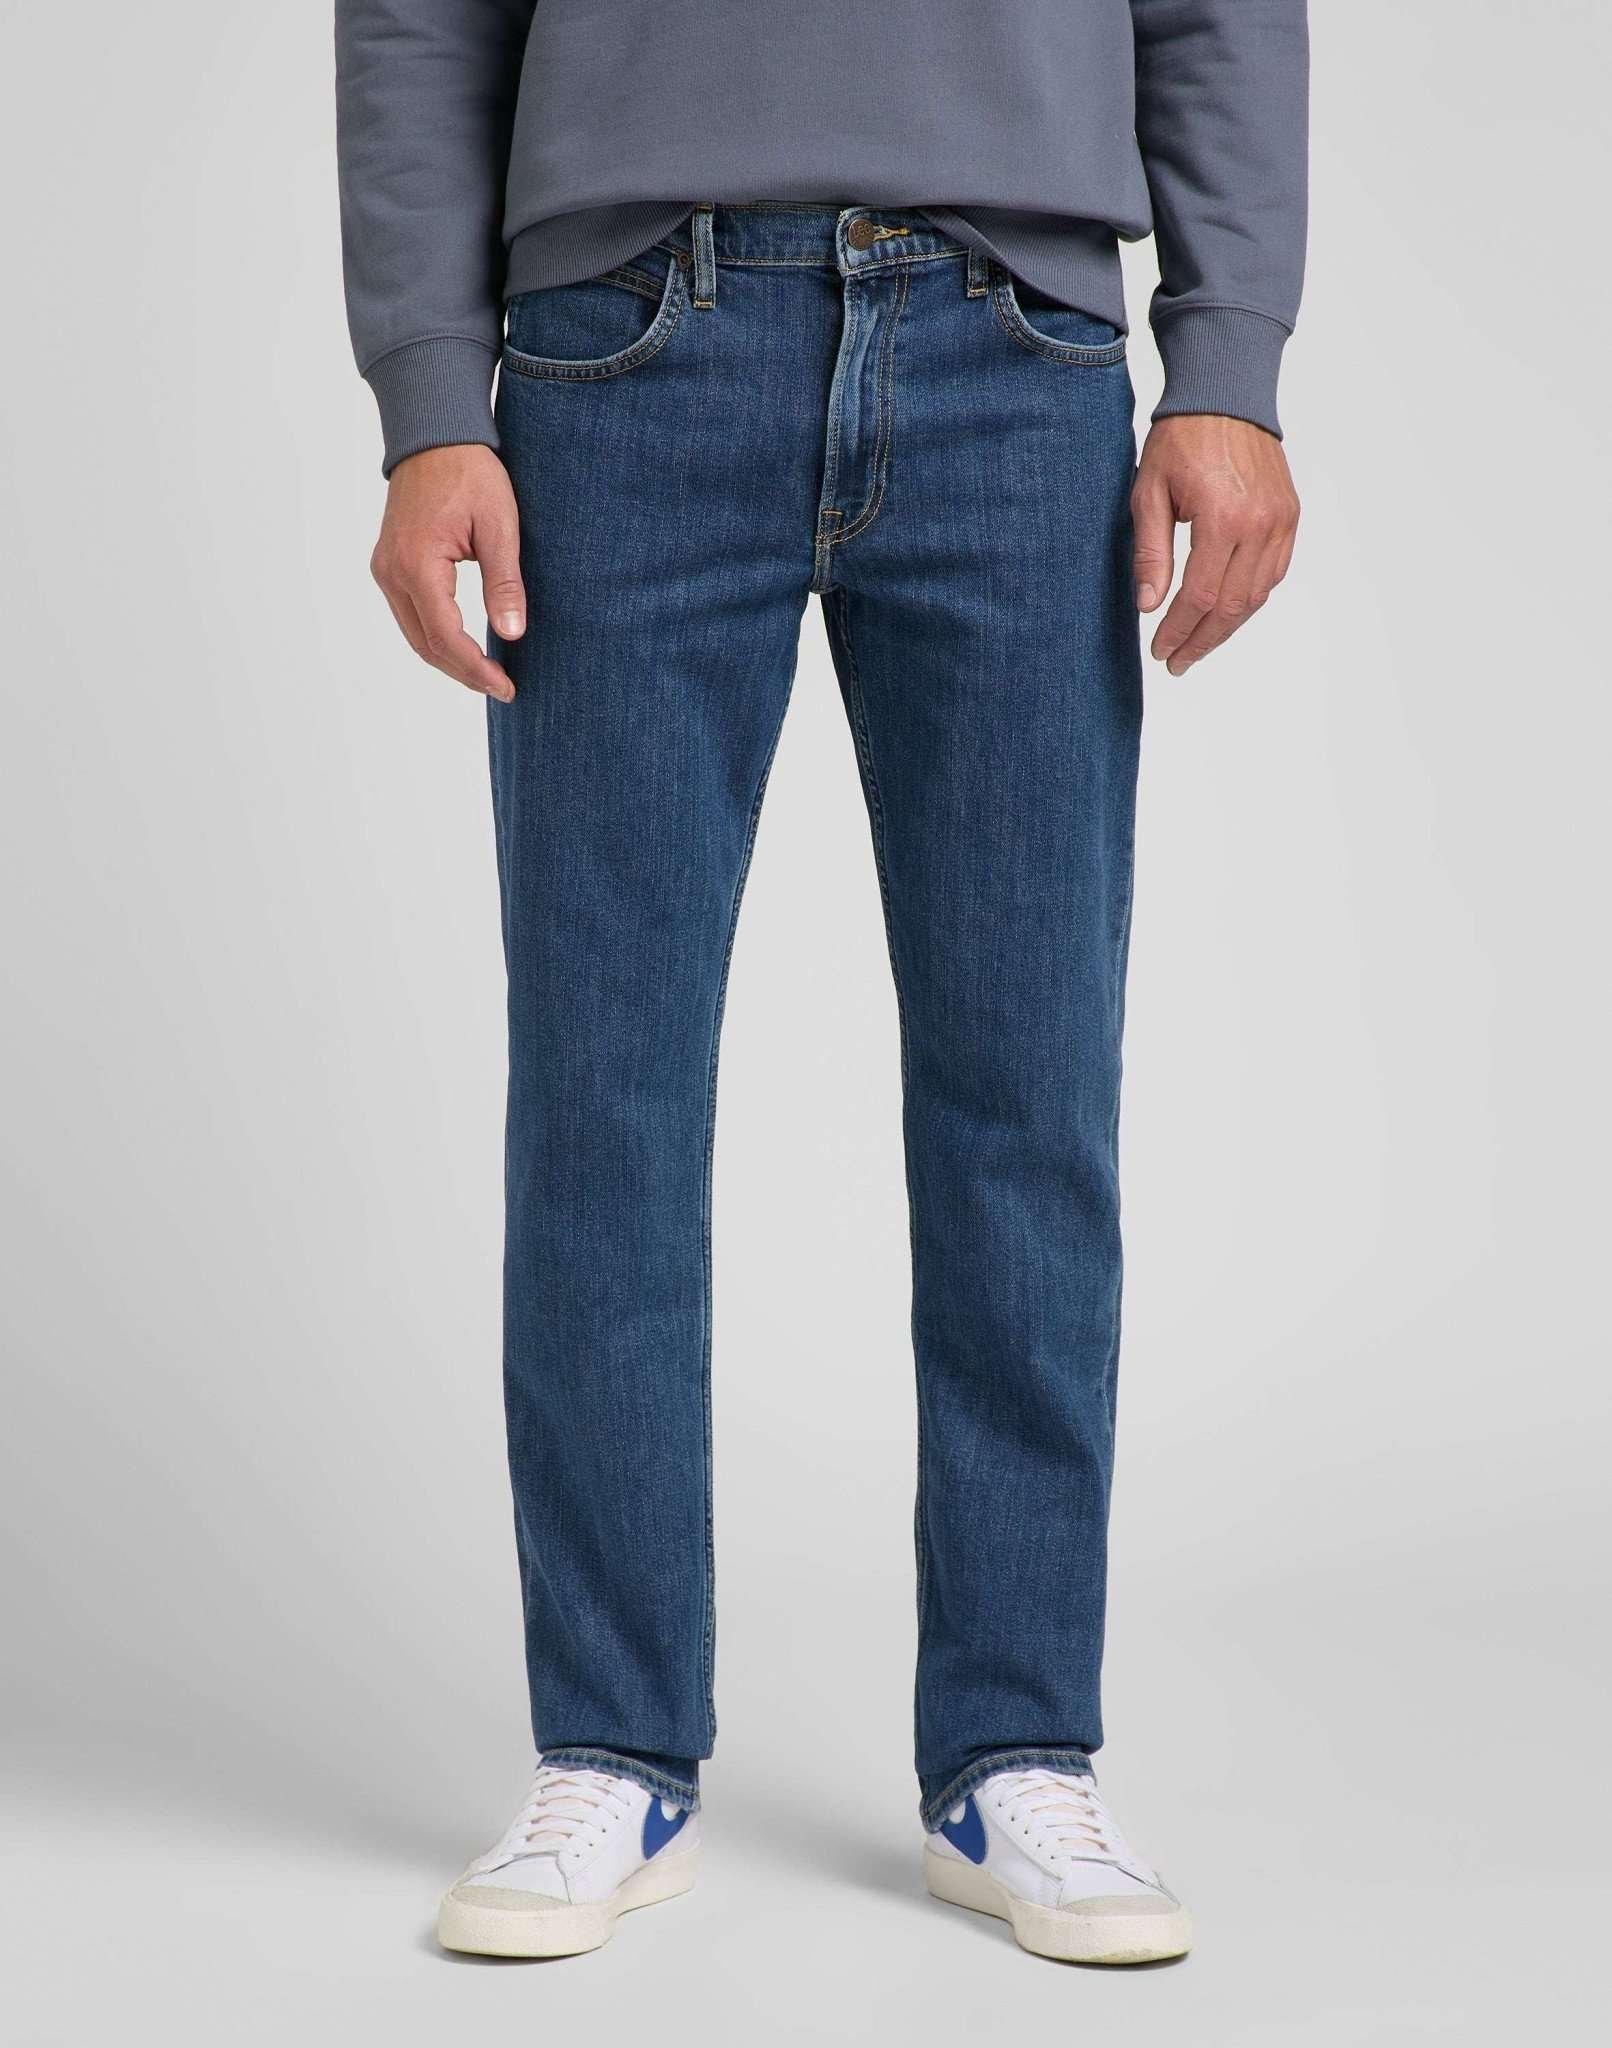 Jeans Straight Leg Brooklyn Herren Blau Denim L30/W33 von Lee